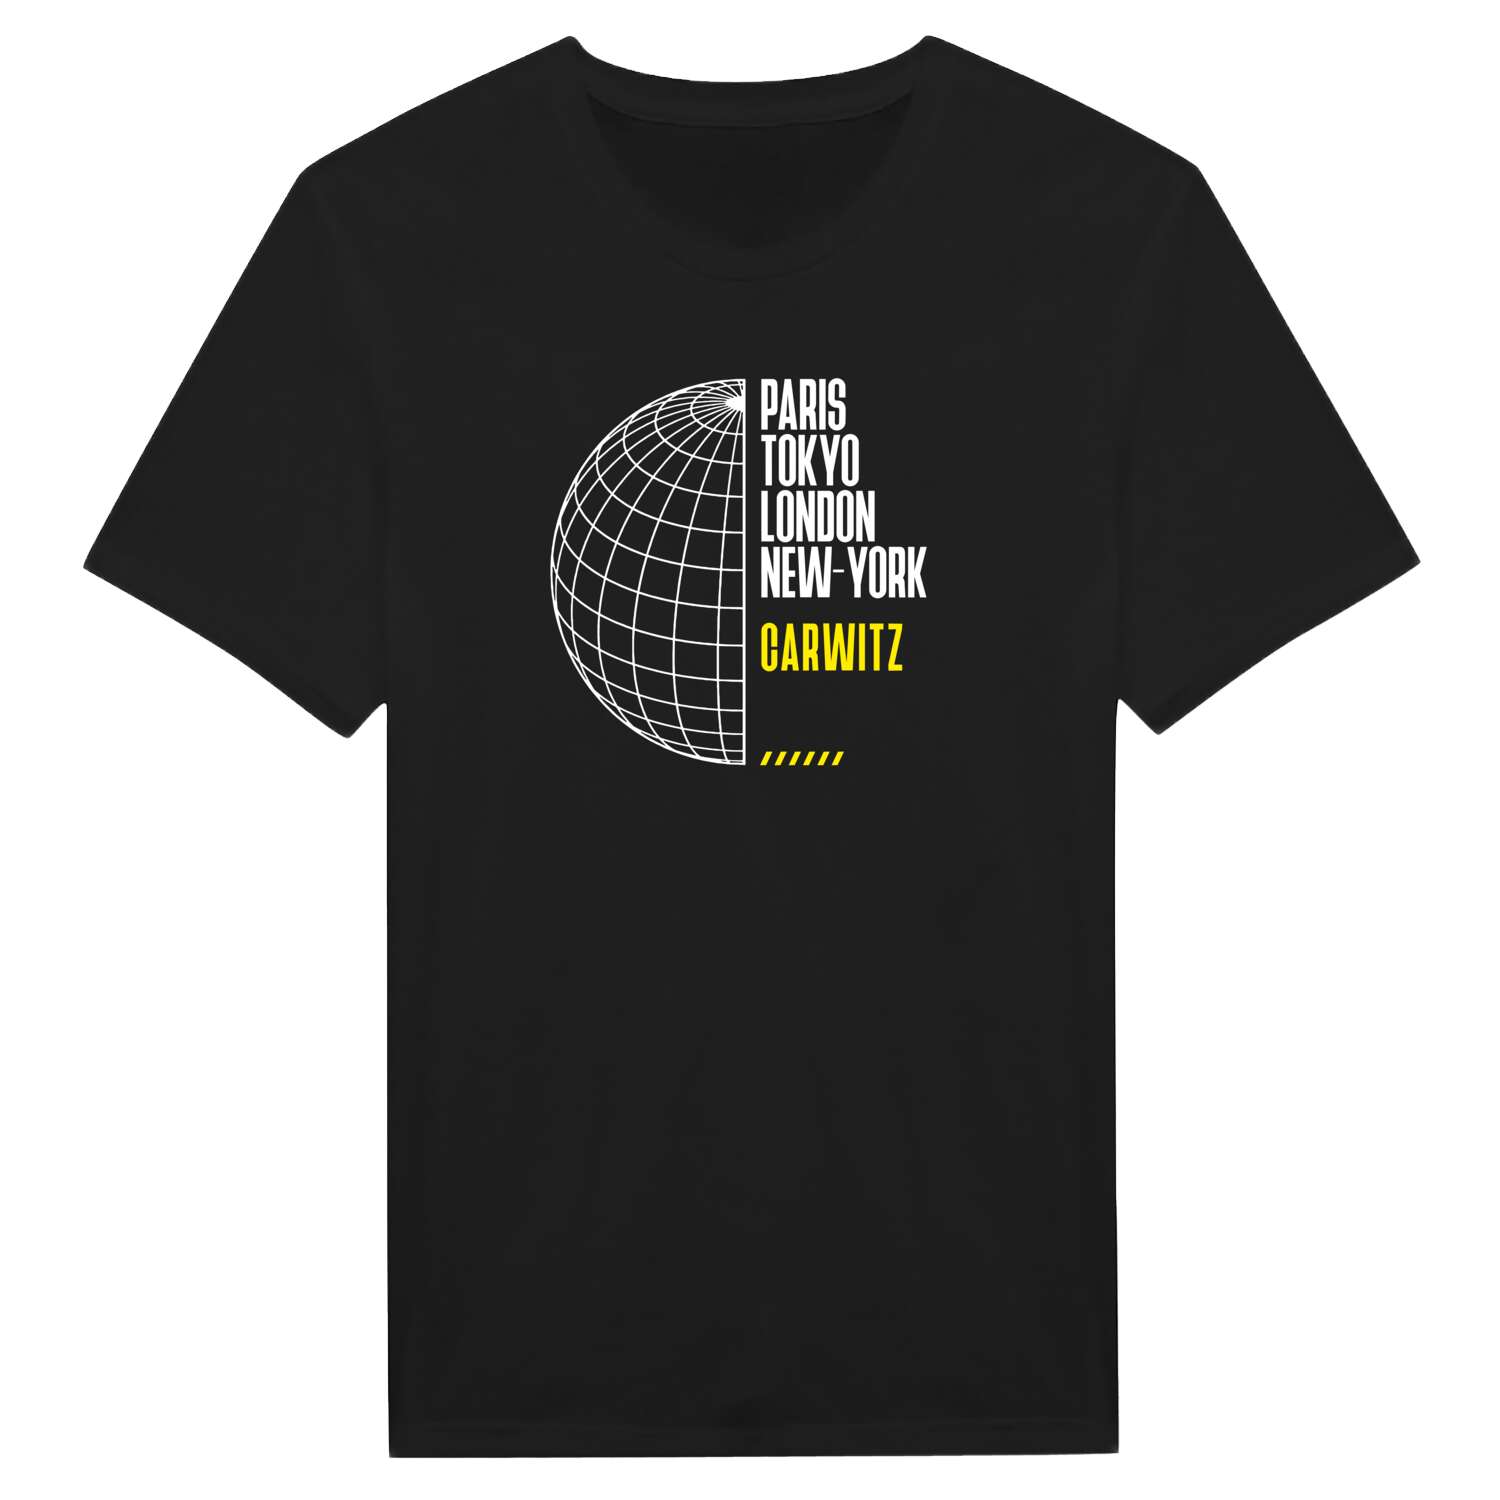 Carwitz T-Shirt »Paris Tokyo London«